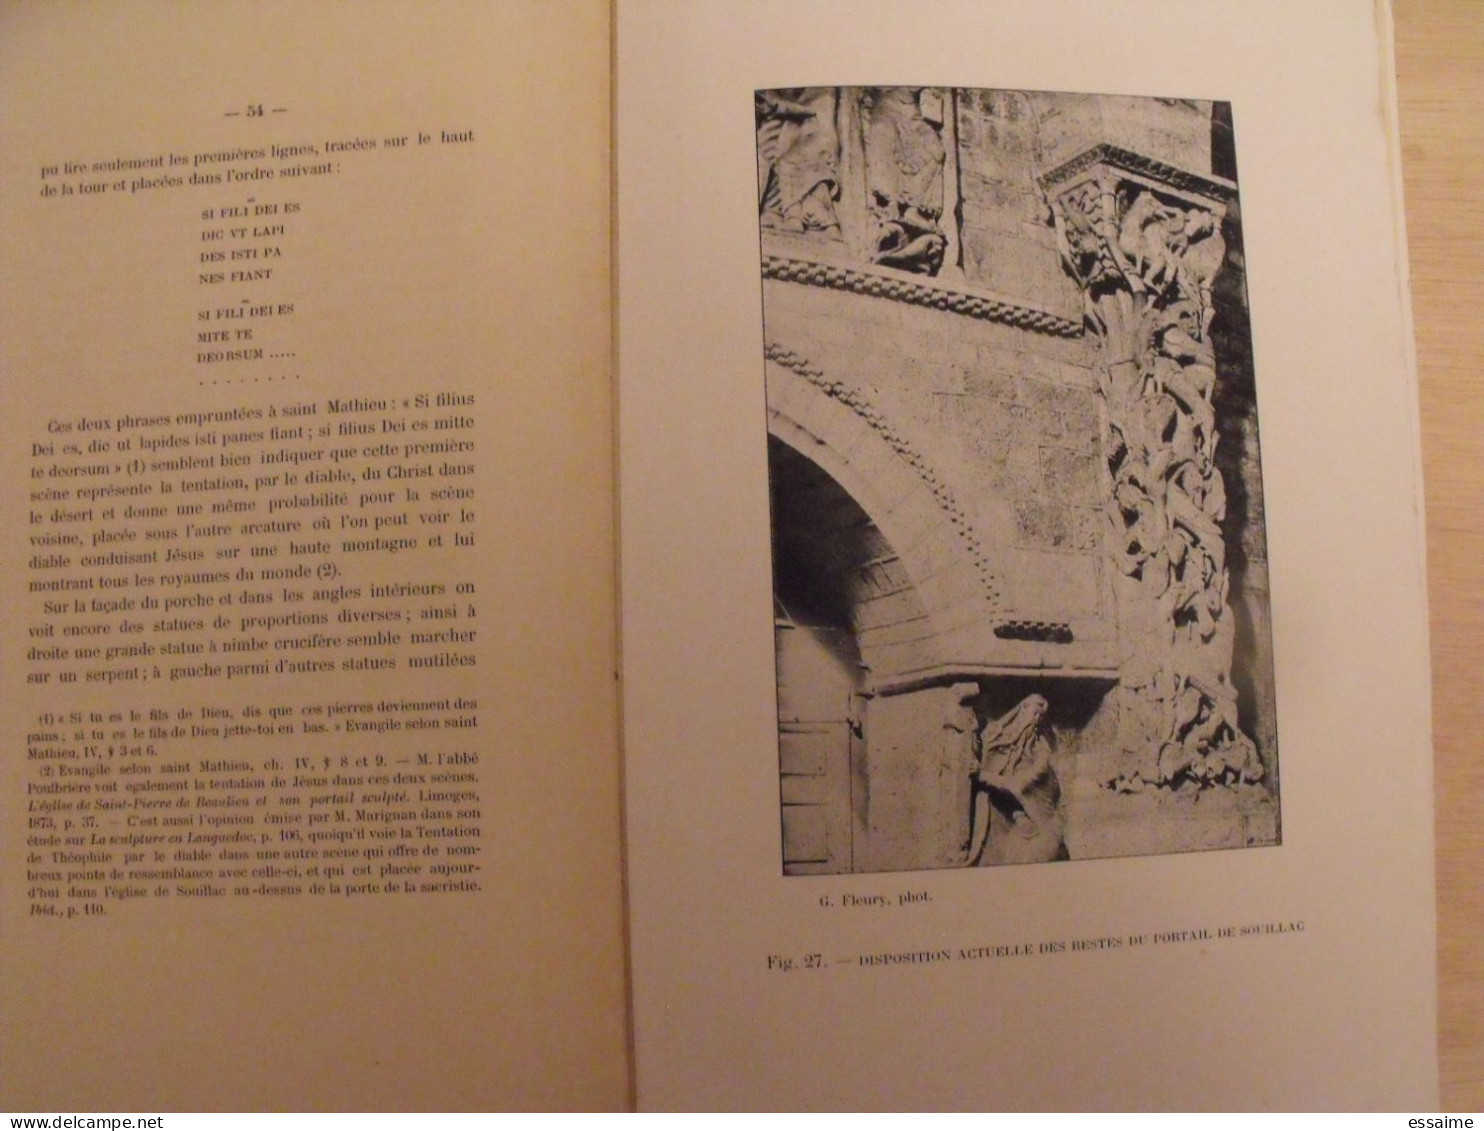 revue historique et archéologique du Maine. année 1904, 1er semestre (3 livraisons). tome LV. Mamers, Le Mans